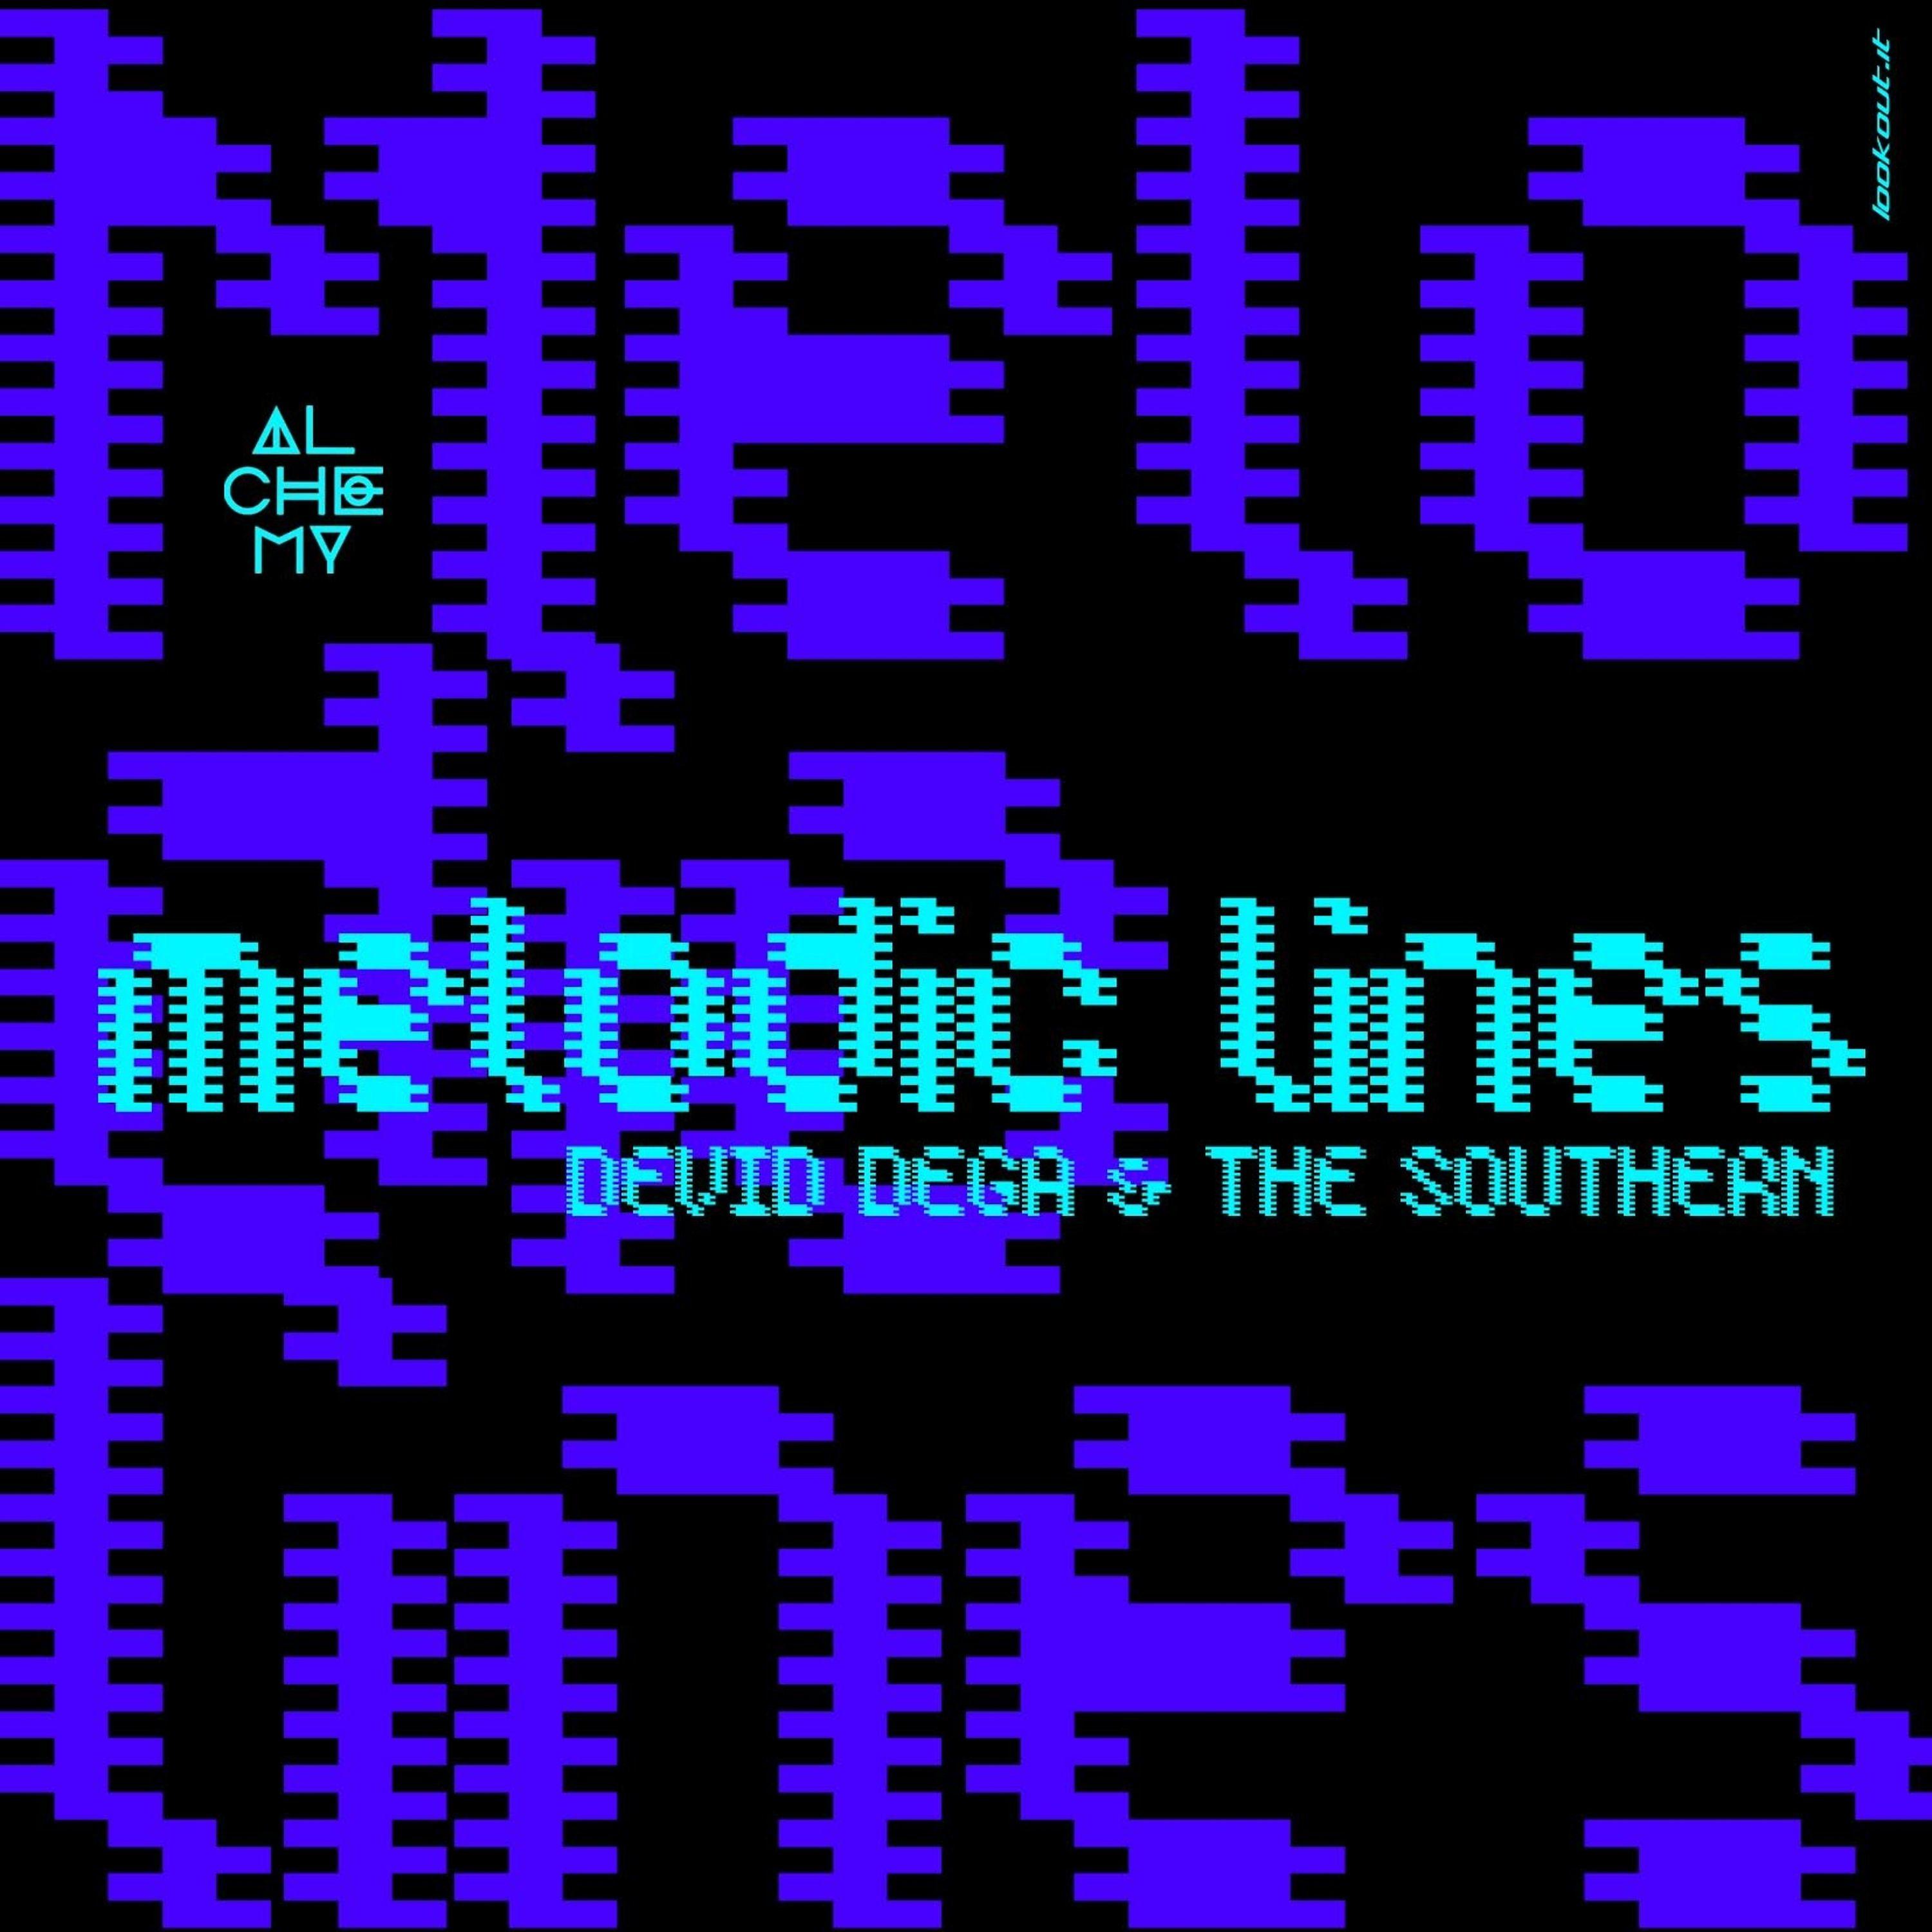 Постер альбома Melodic Lines